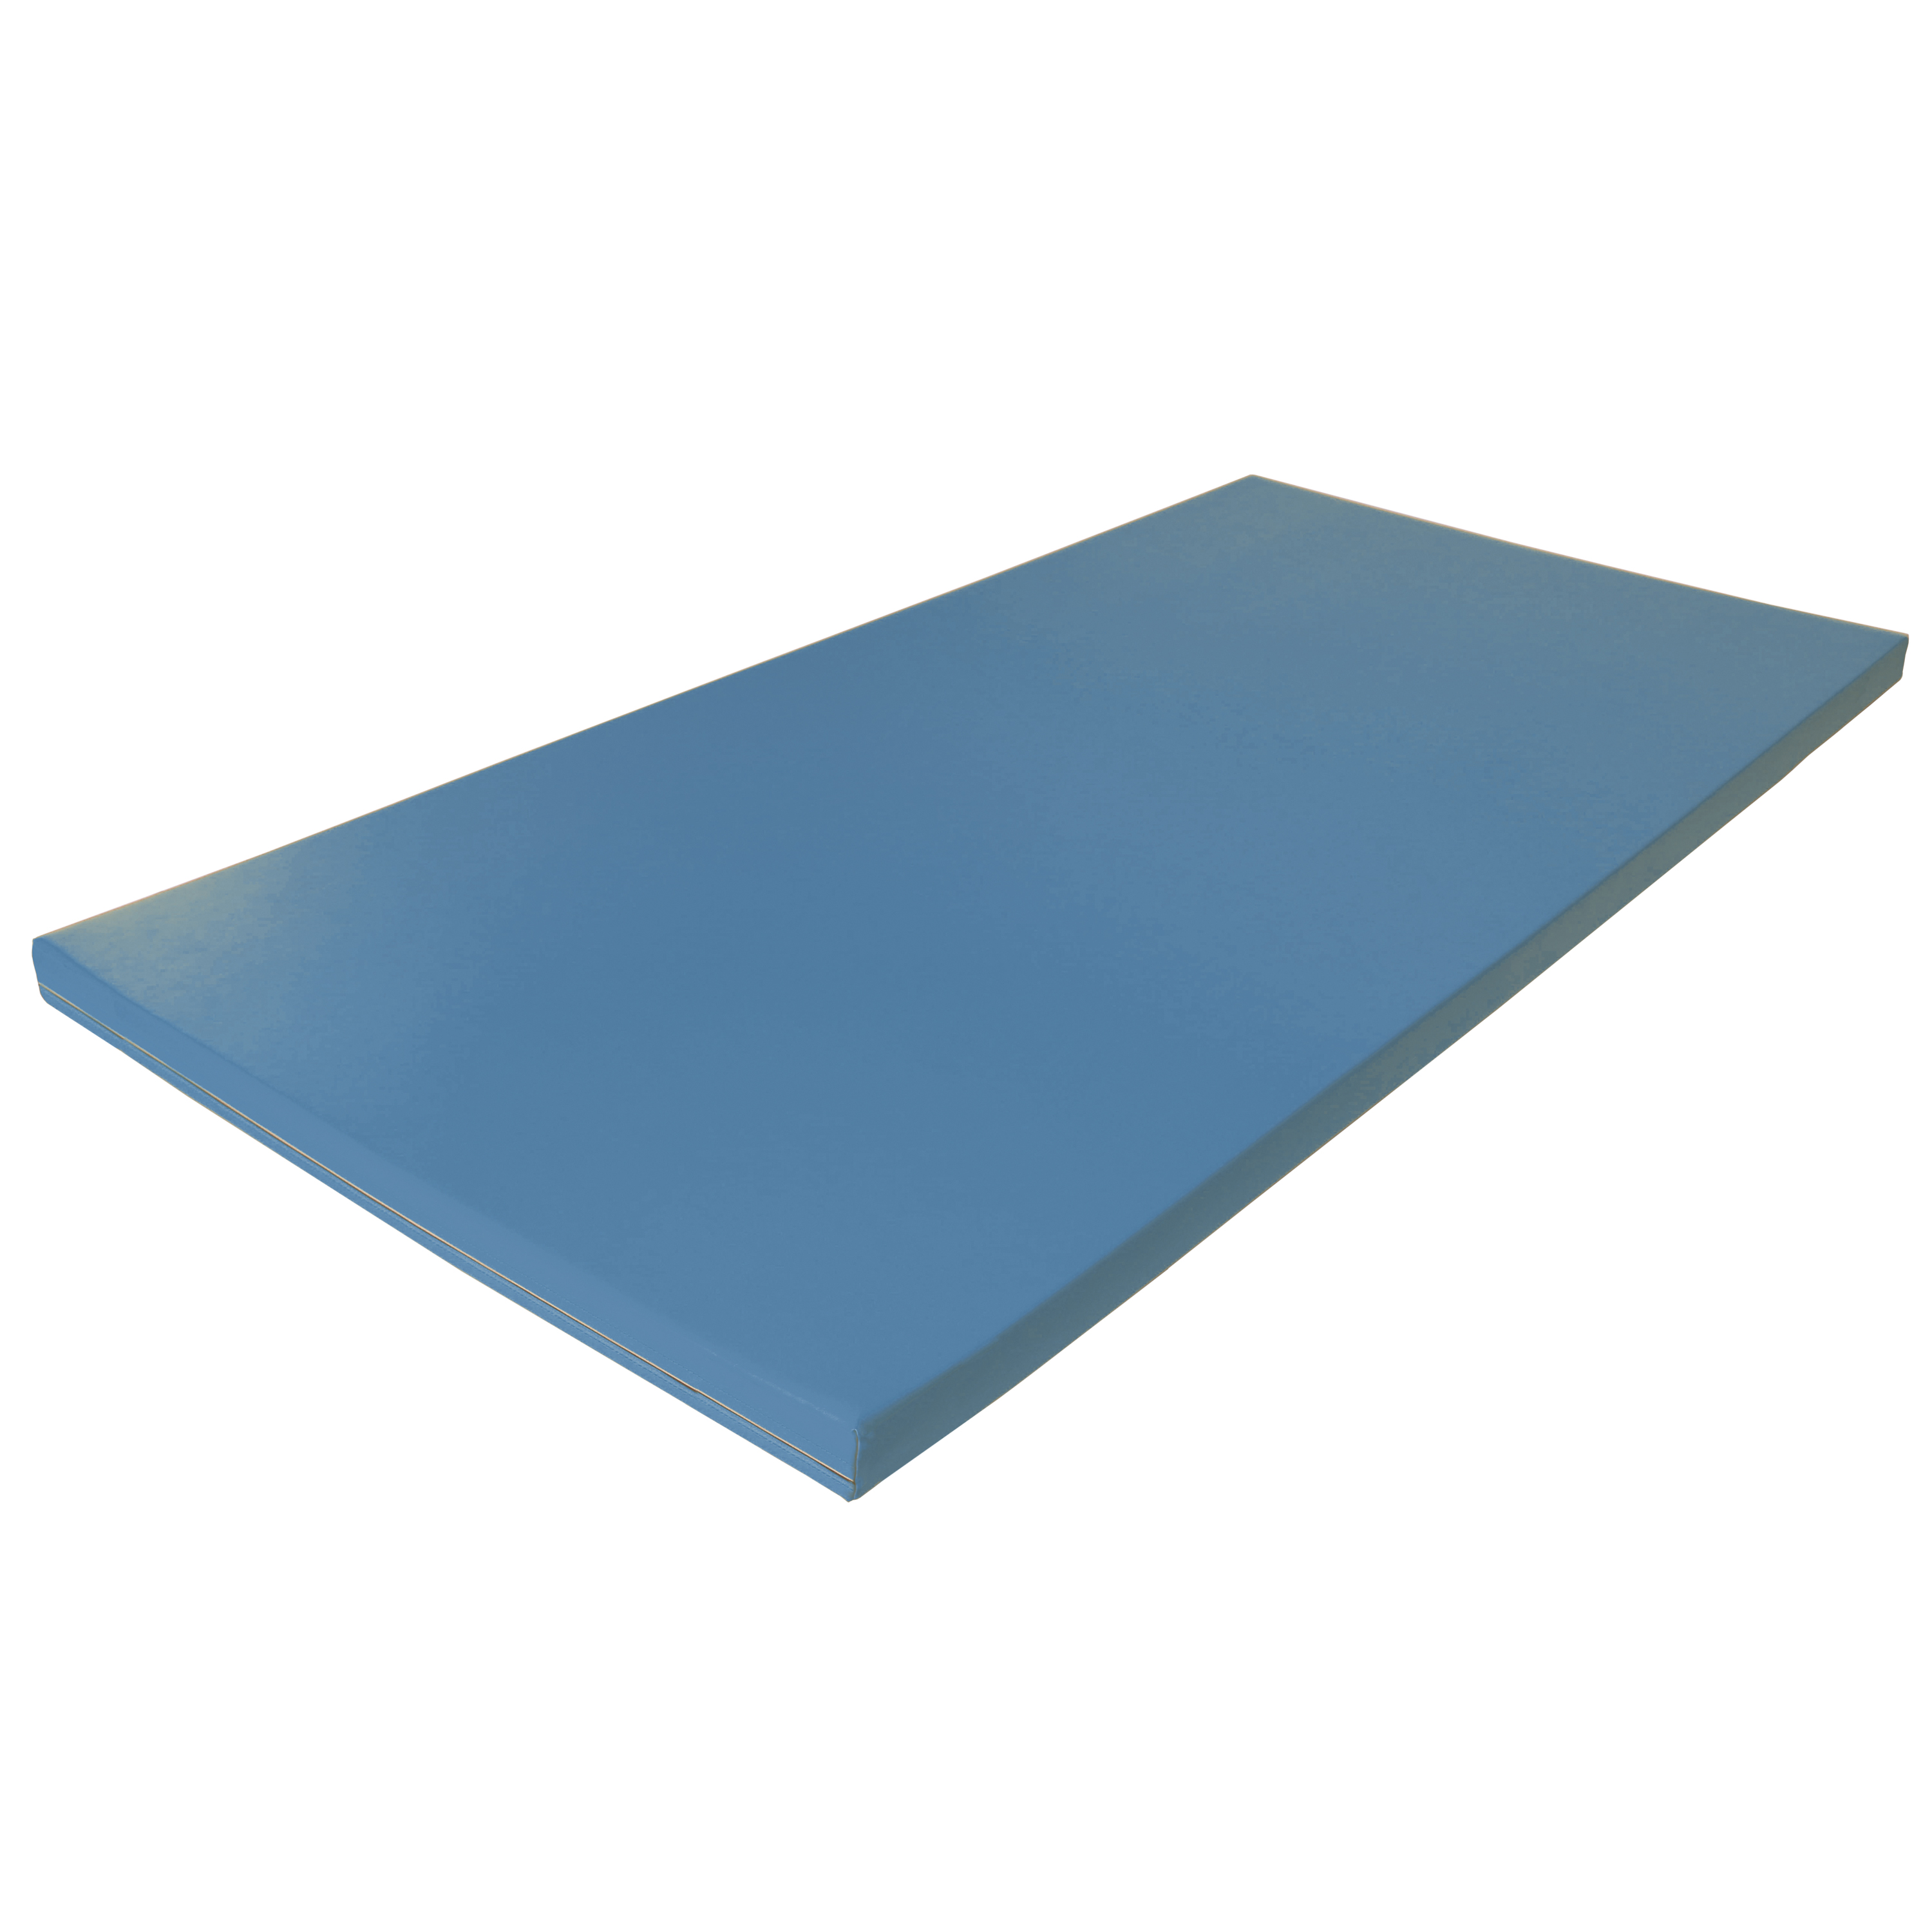 Fallschutzmatte Superleicht 'hellblau', 150 x 100 cm